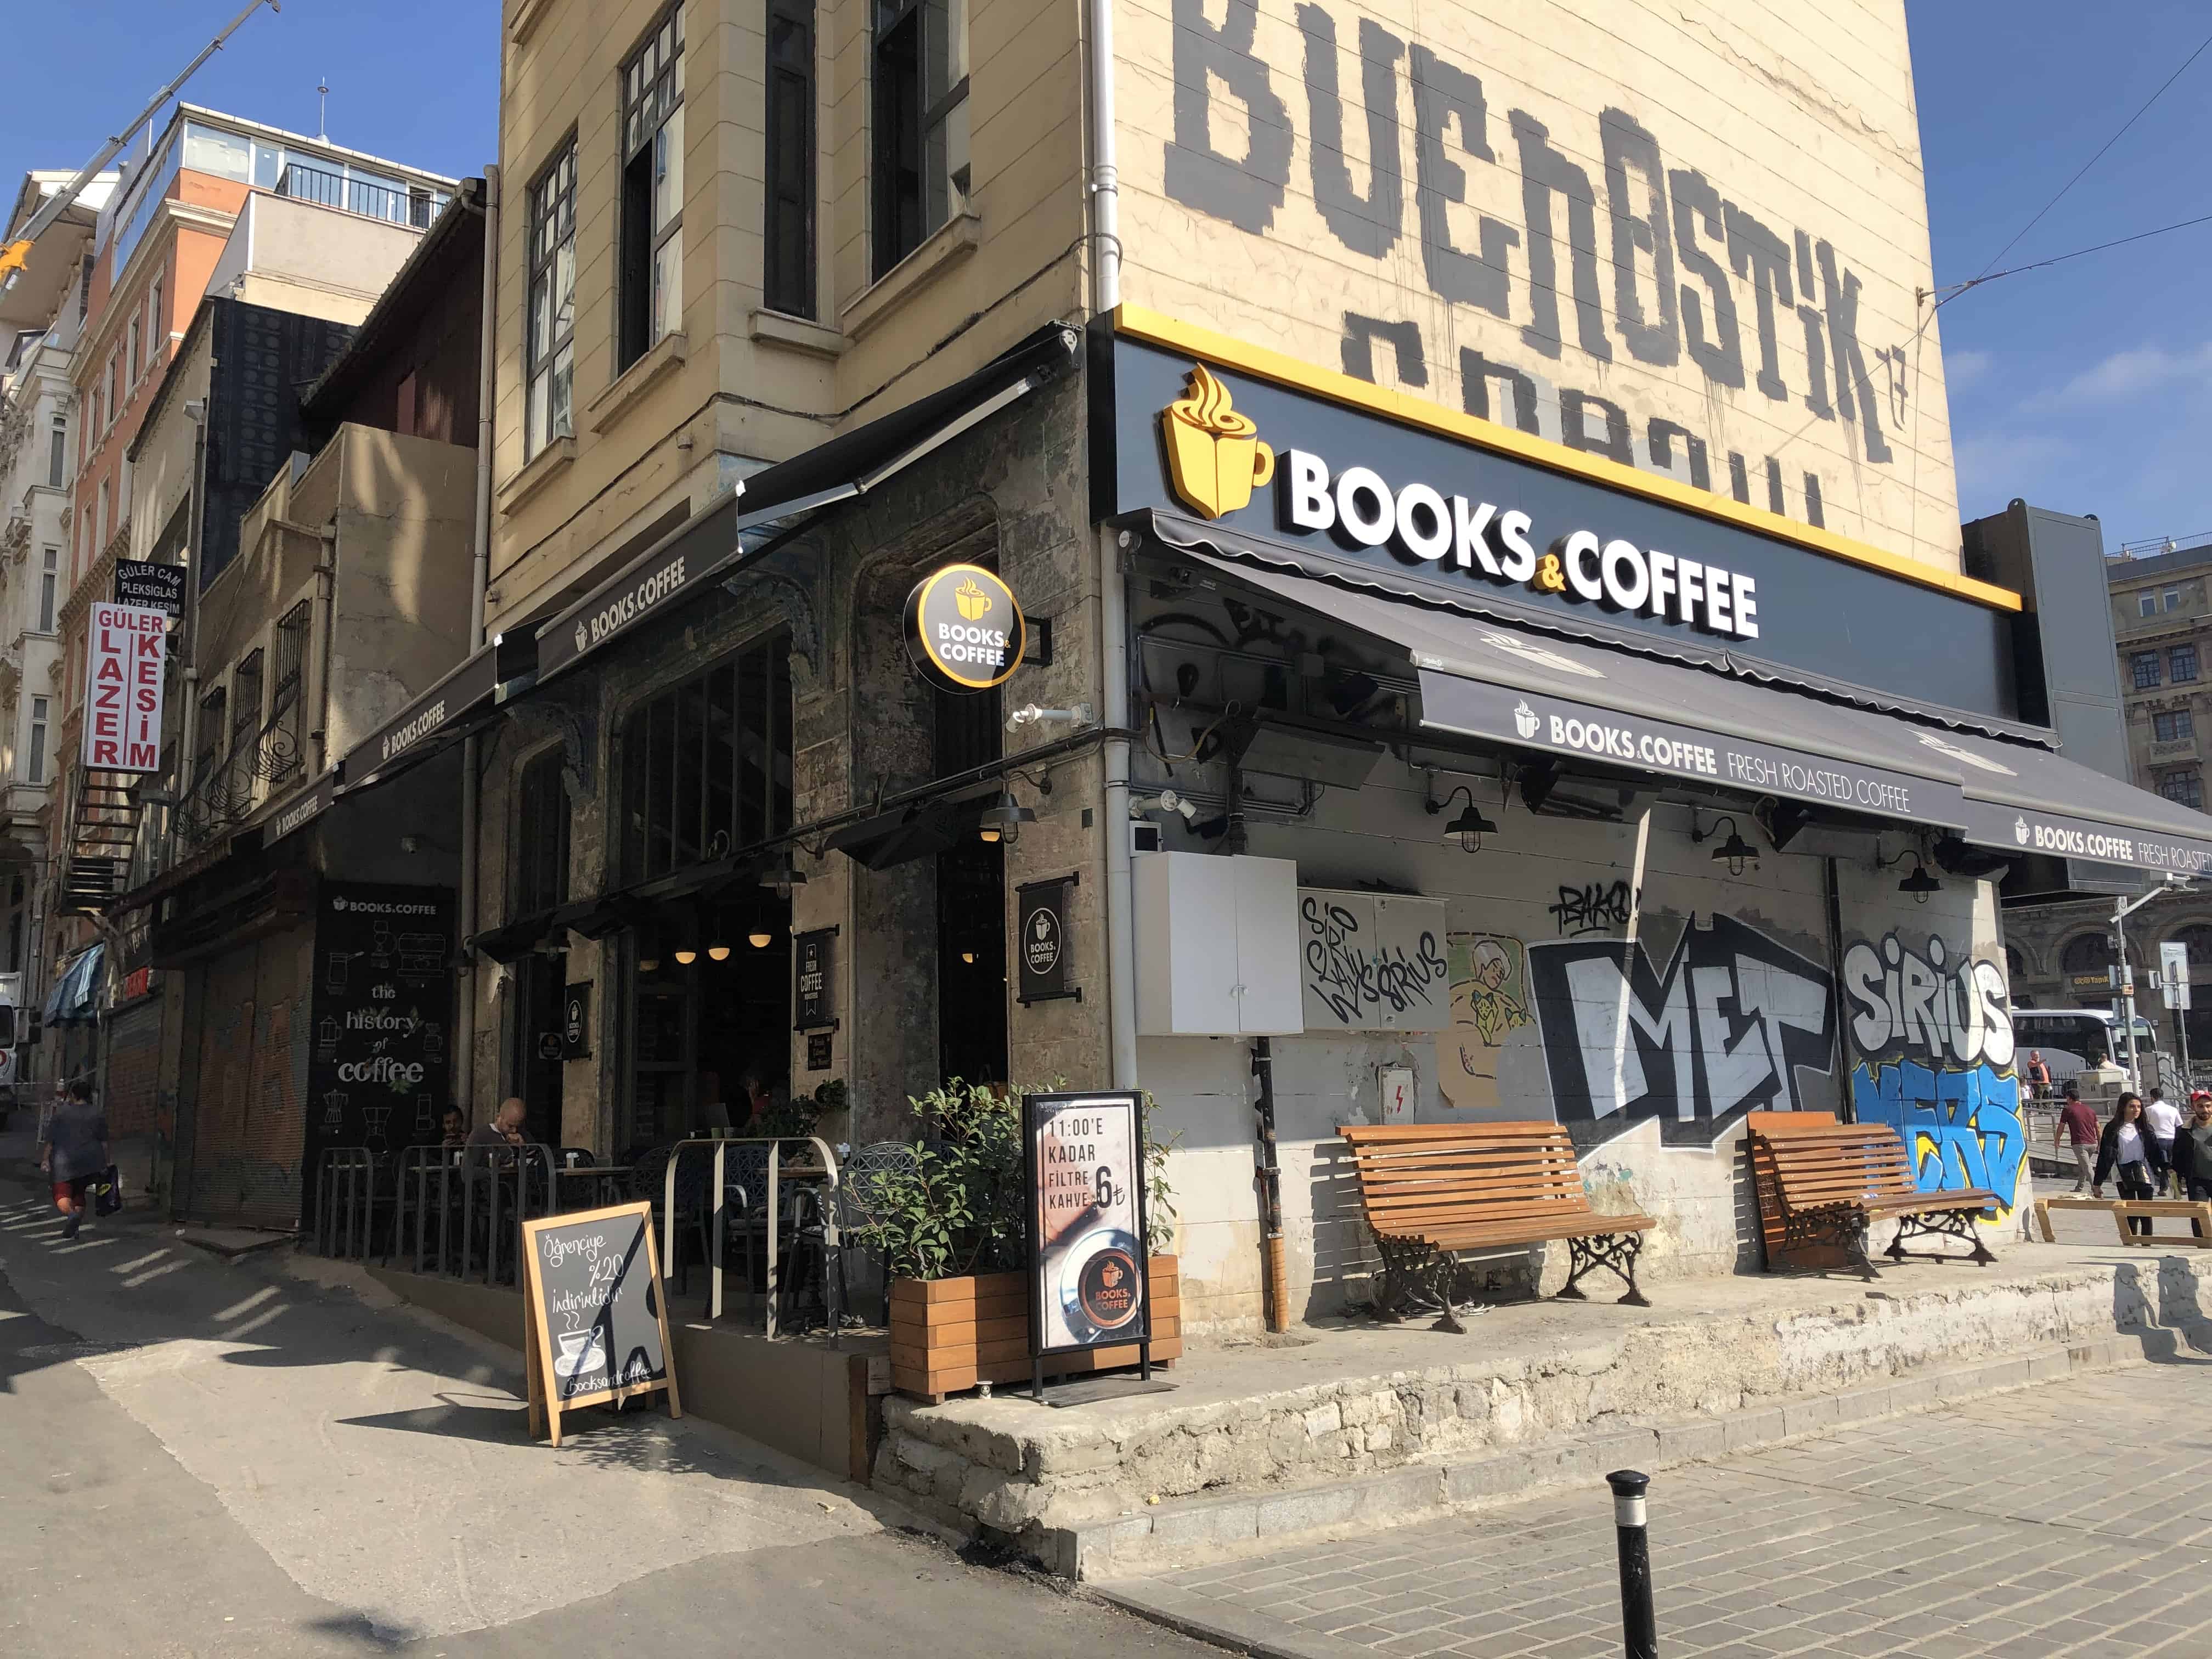 Books & Coffee in Karaköy, Istanbul, Turkey